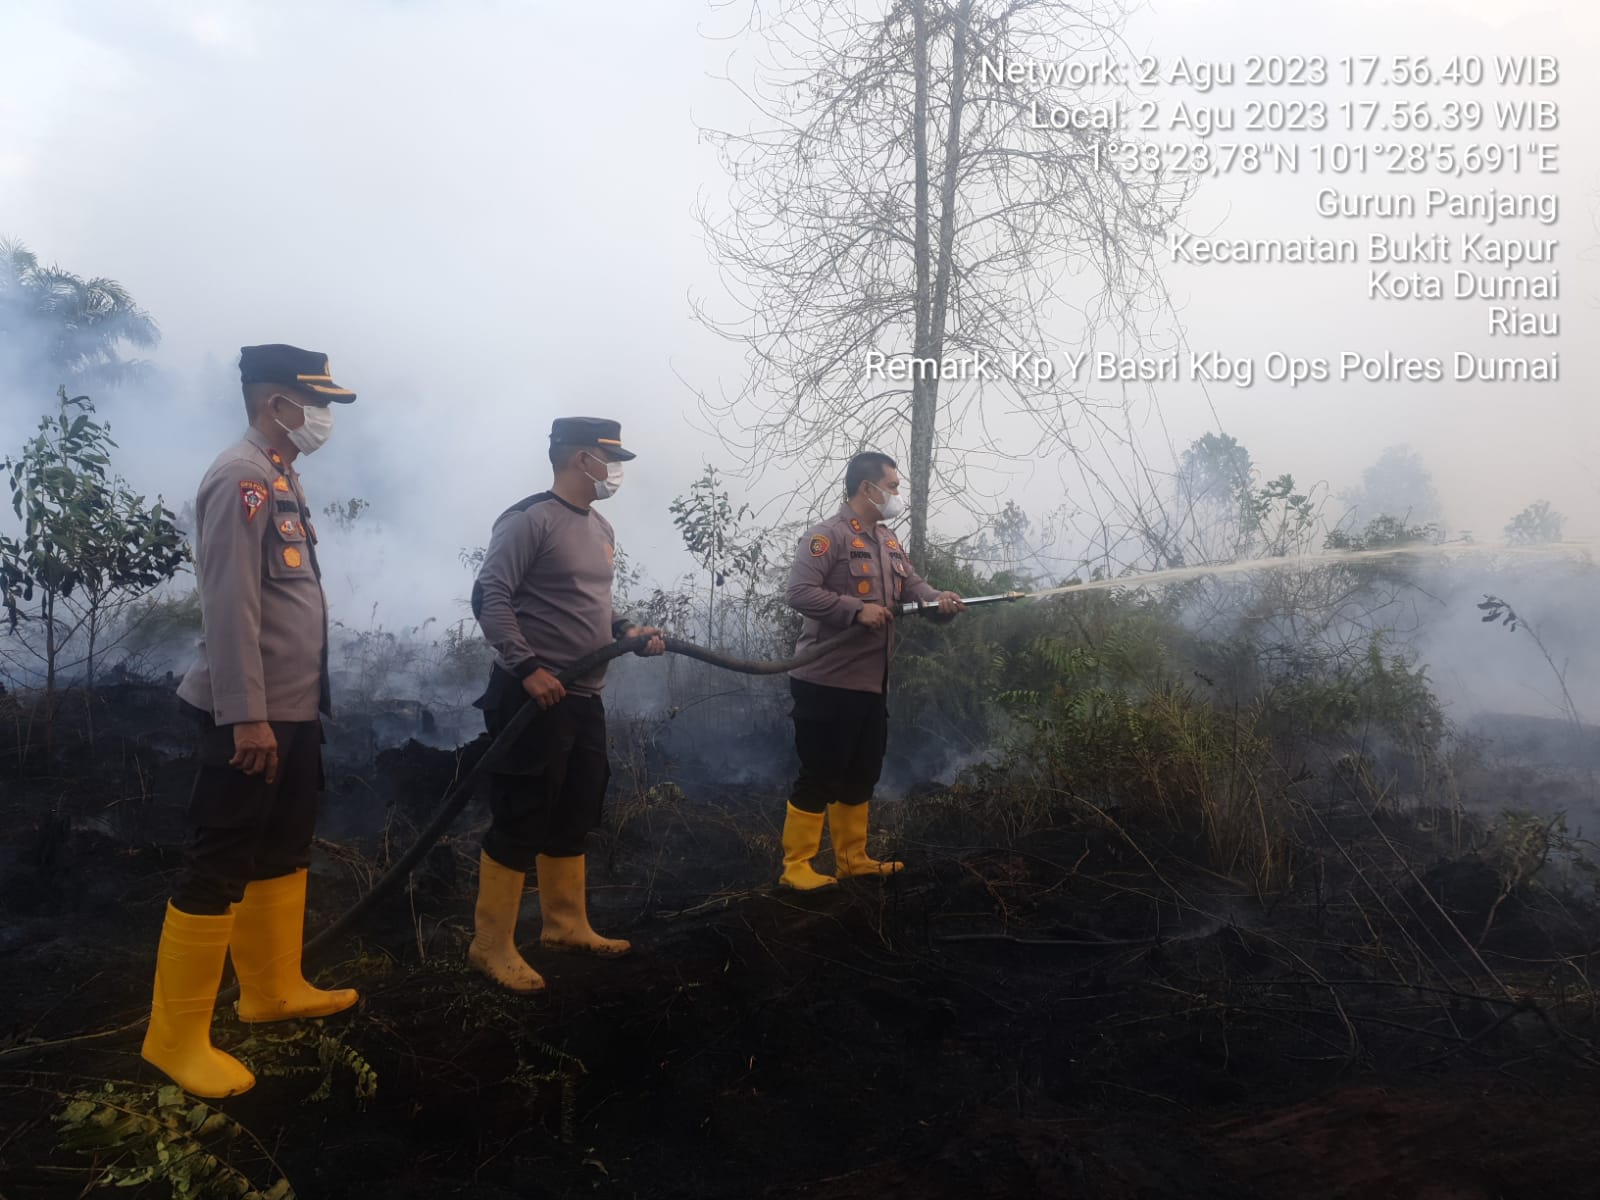 Permalink ke Polres Dumai Pimpin Upaya Kebakaran Hutan dan Lahan( Karhutla)